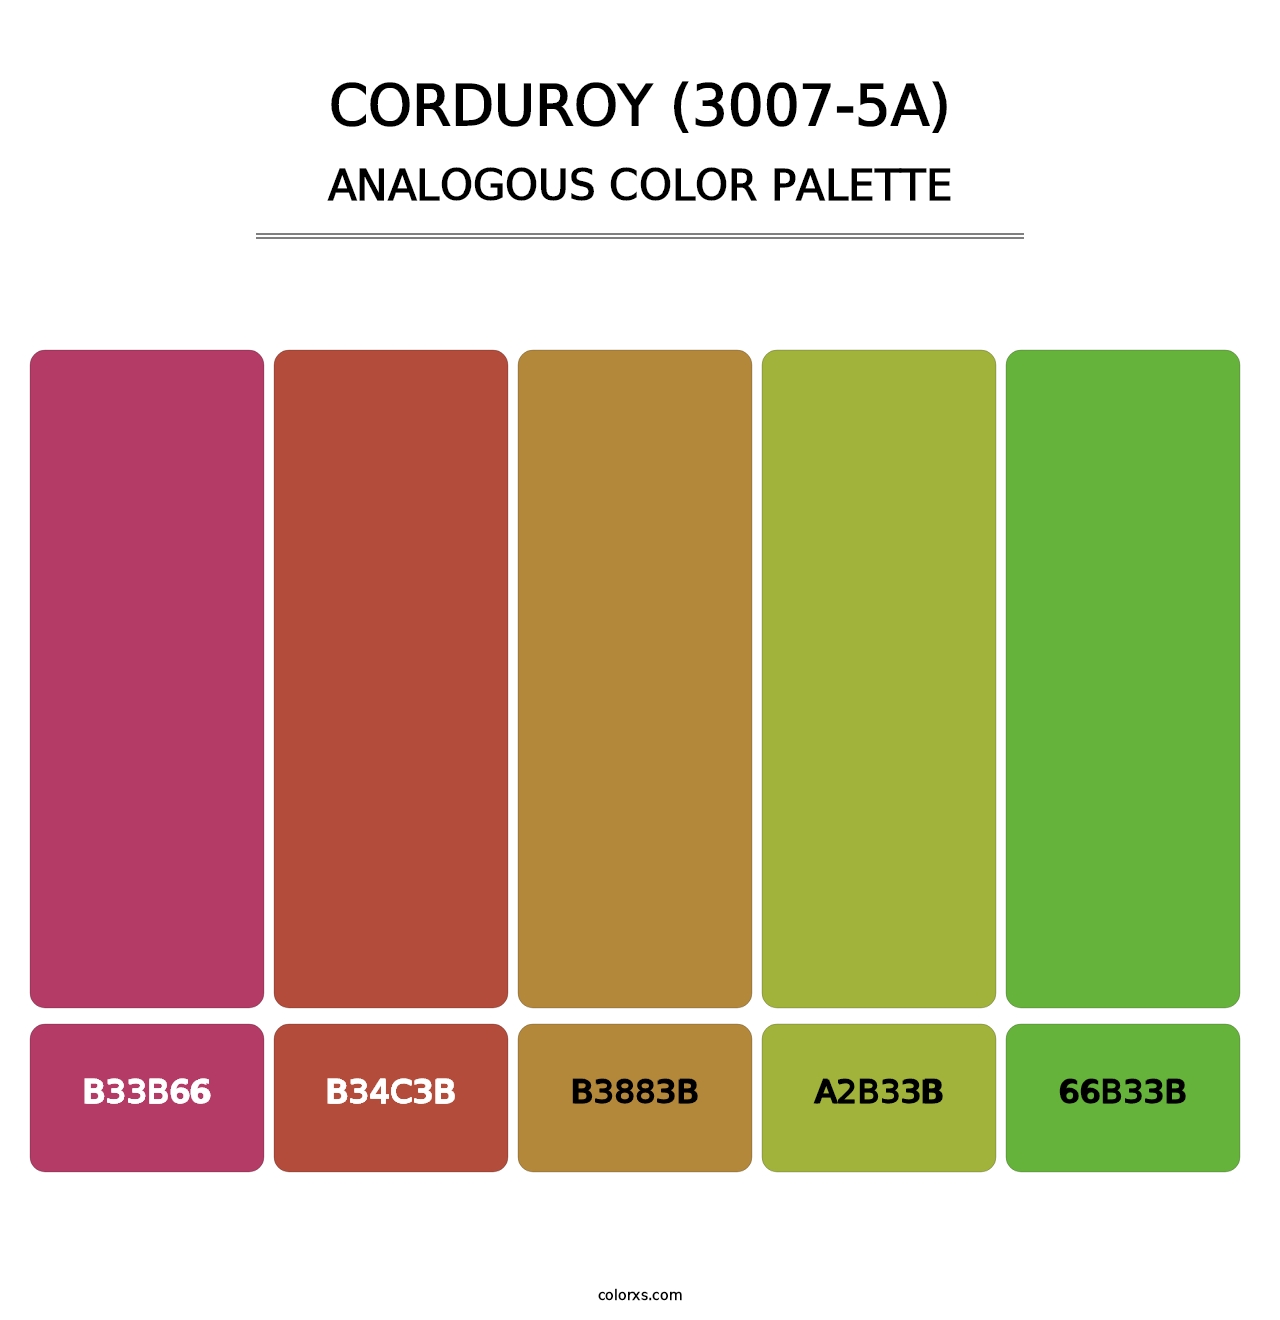 Corduroy (3007-5A) - Analogous Color Palette